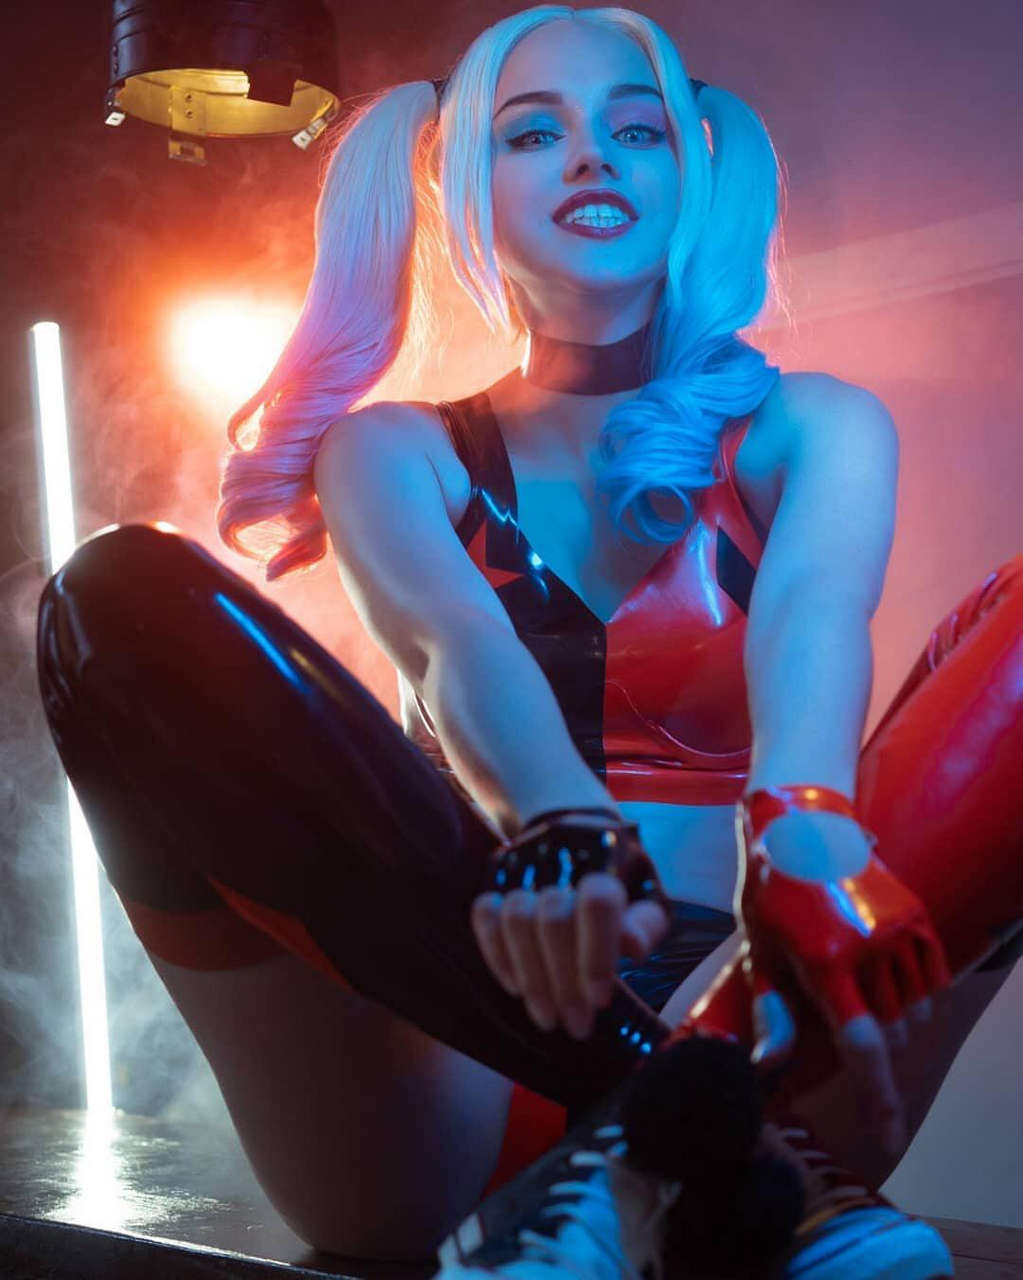 Harley Quinn By Shirogane Sam